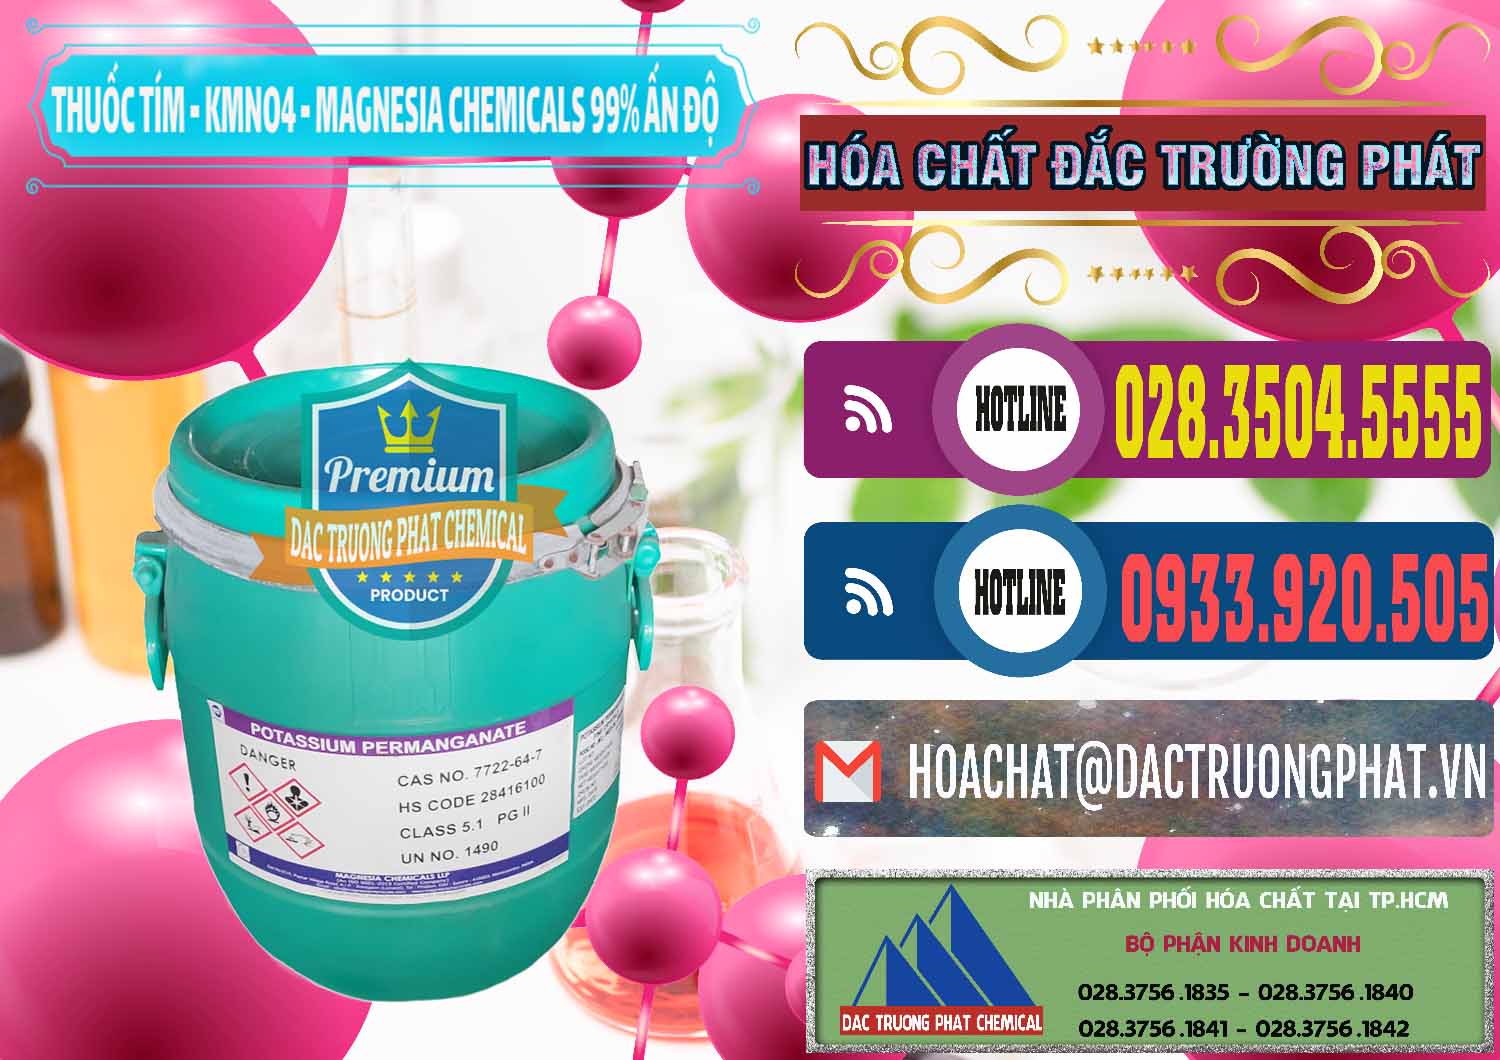 Chuyên kinh doanh và bán Thuốc Tím - KMNO4 Magnesia Chemicals 99% Ấn Độ India - 0251 - Nhà cung cấp _ phân phối hóa chất tại TP.HCM - muabanhoachat.com.vn